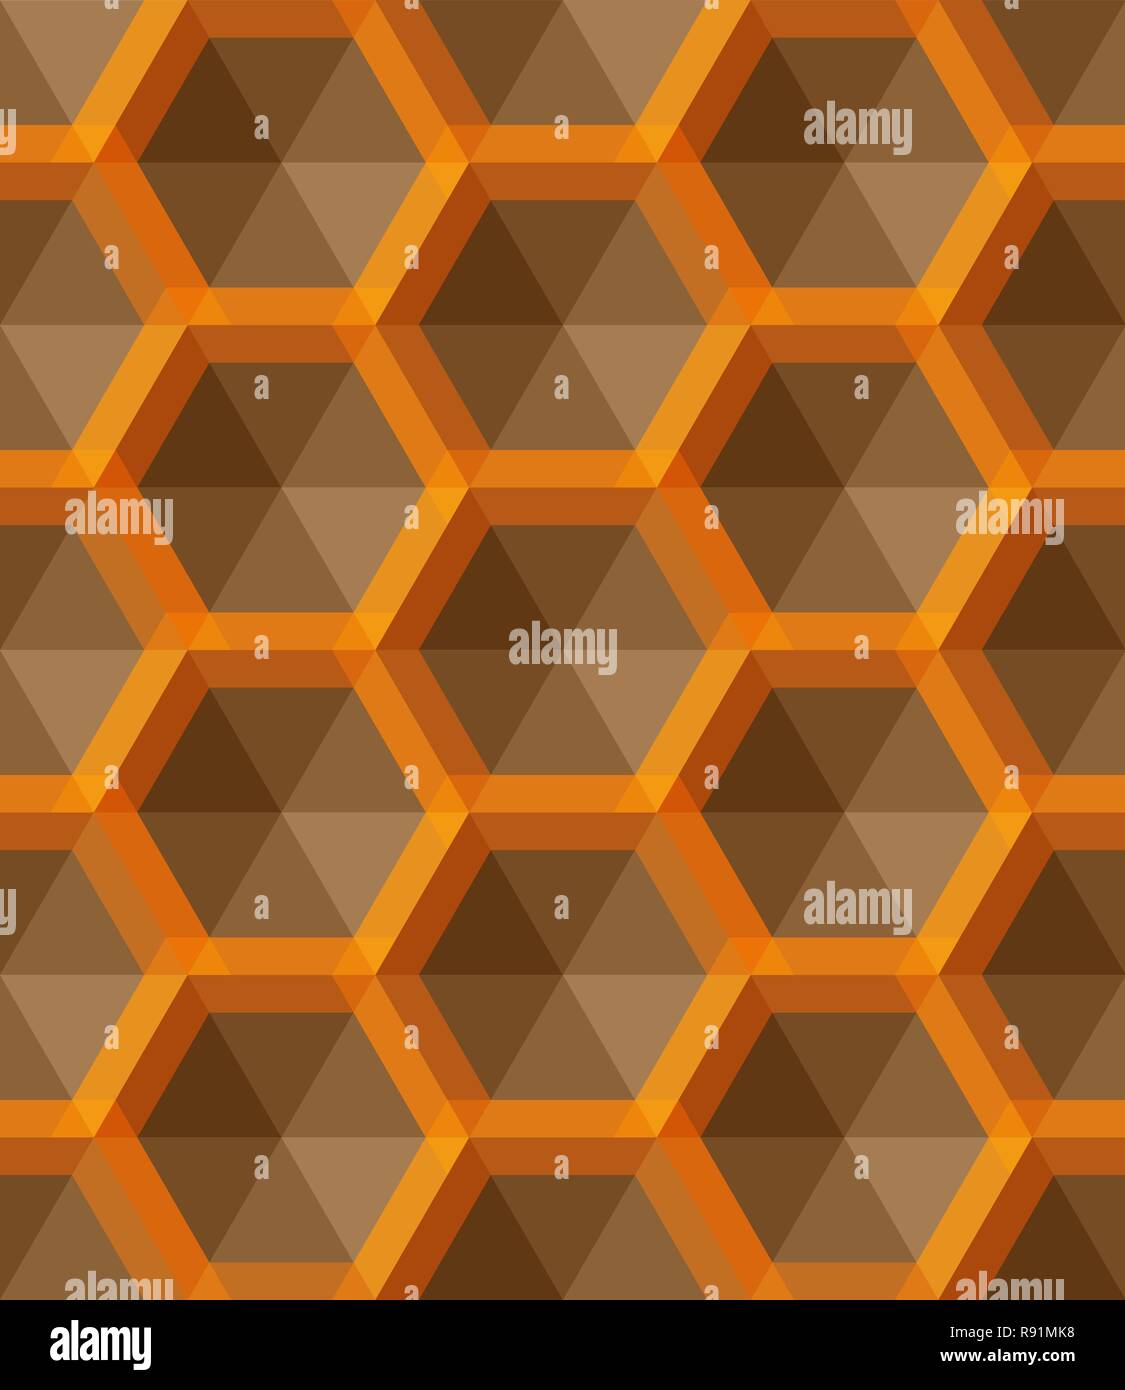 Ornement de petits hexagones jaunes, grille hexagonale, treillis, répéter 600x600 Illustration de Vecteur